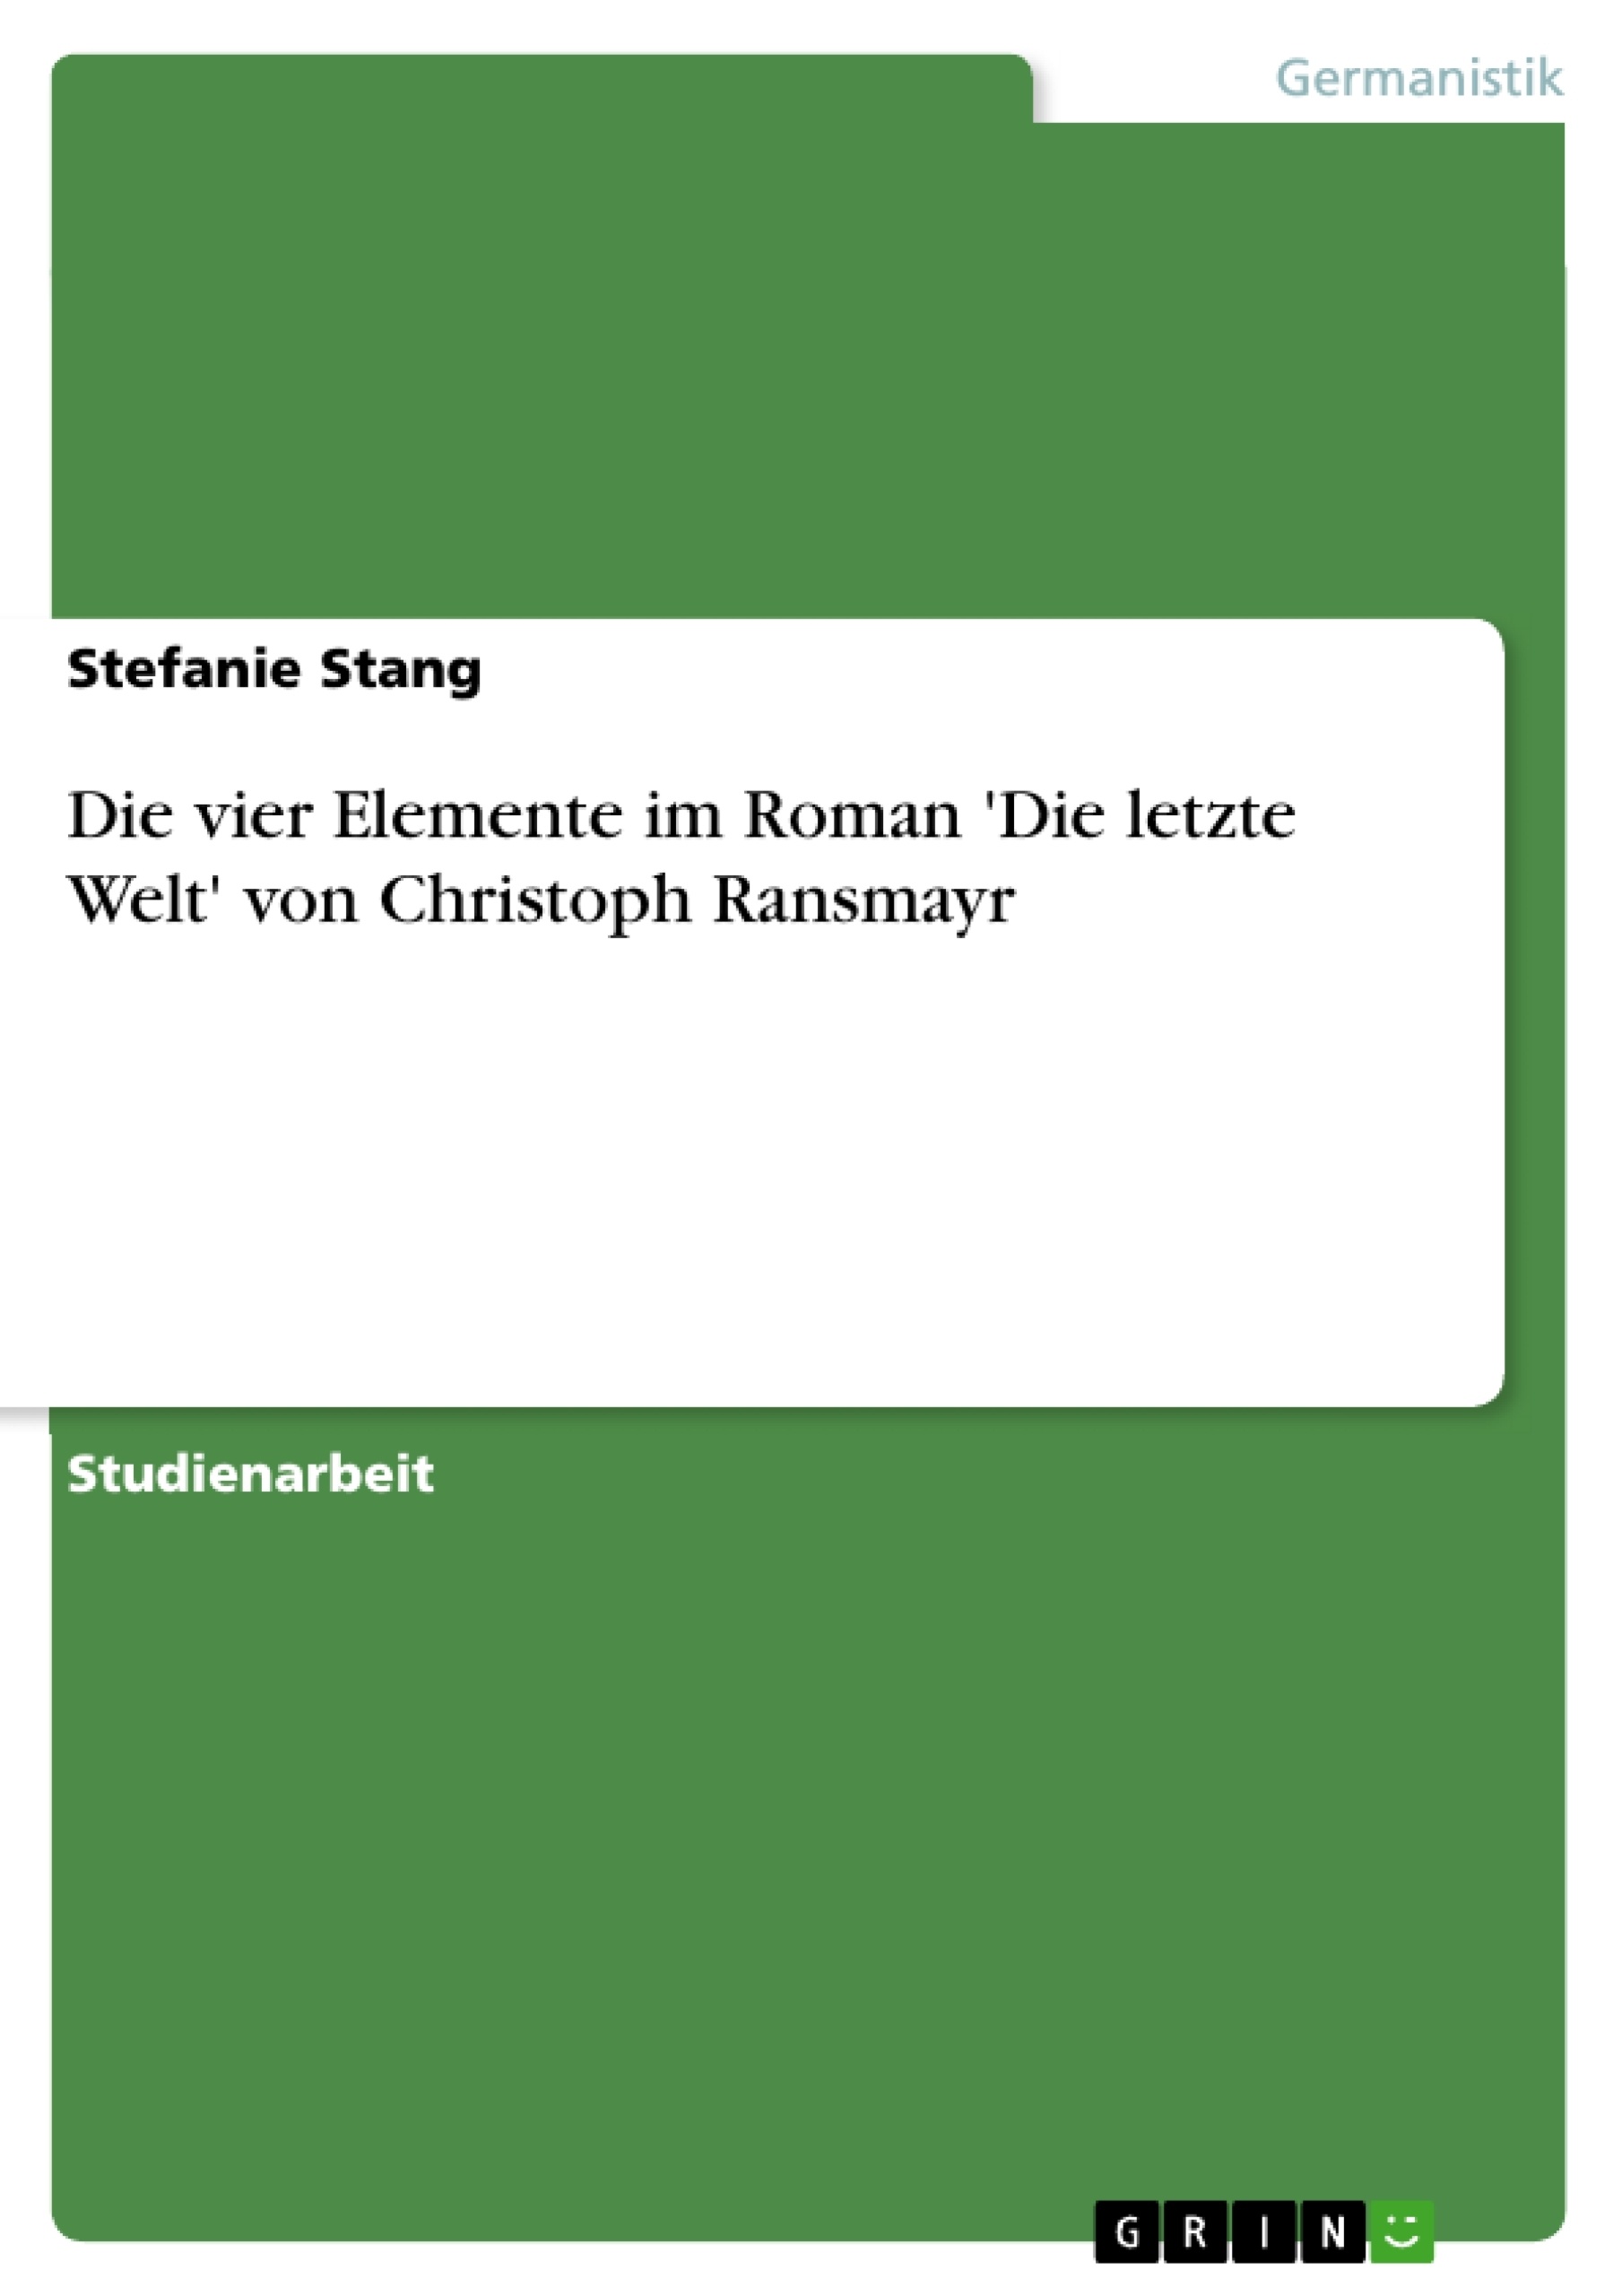 Title: Die vier Elemente im Roman 'Die letzte Welt' von Christoph Ransmayr